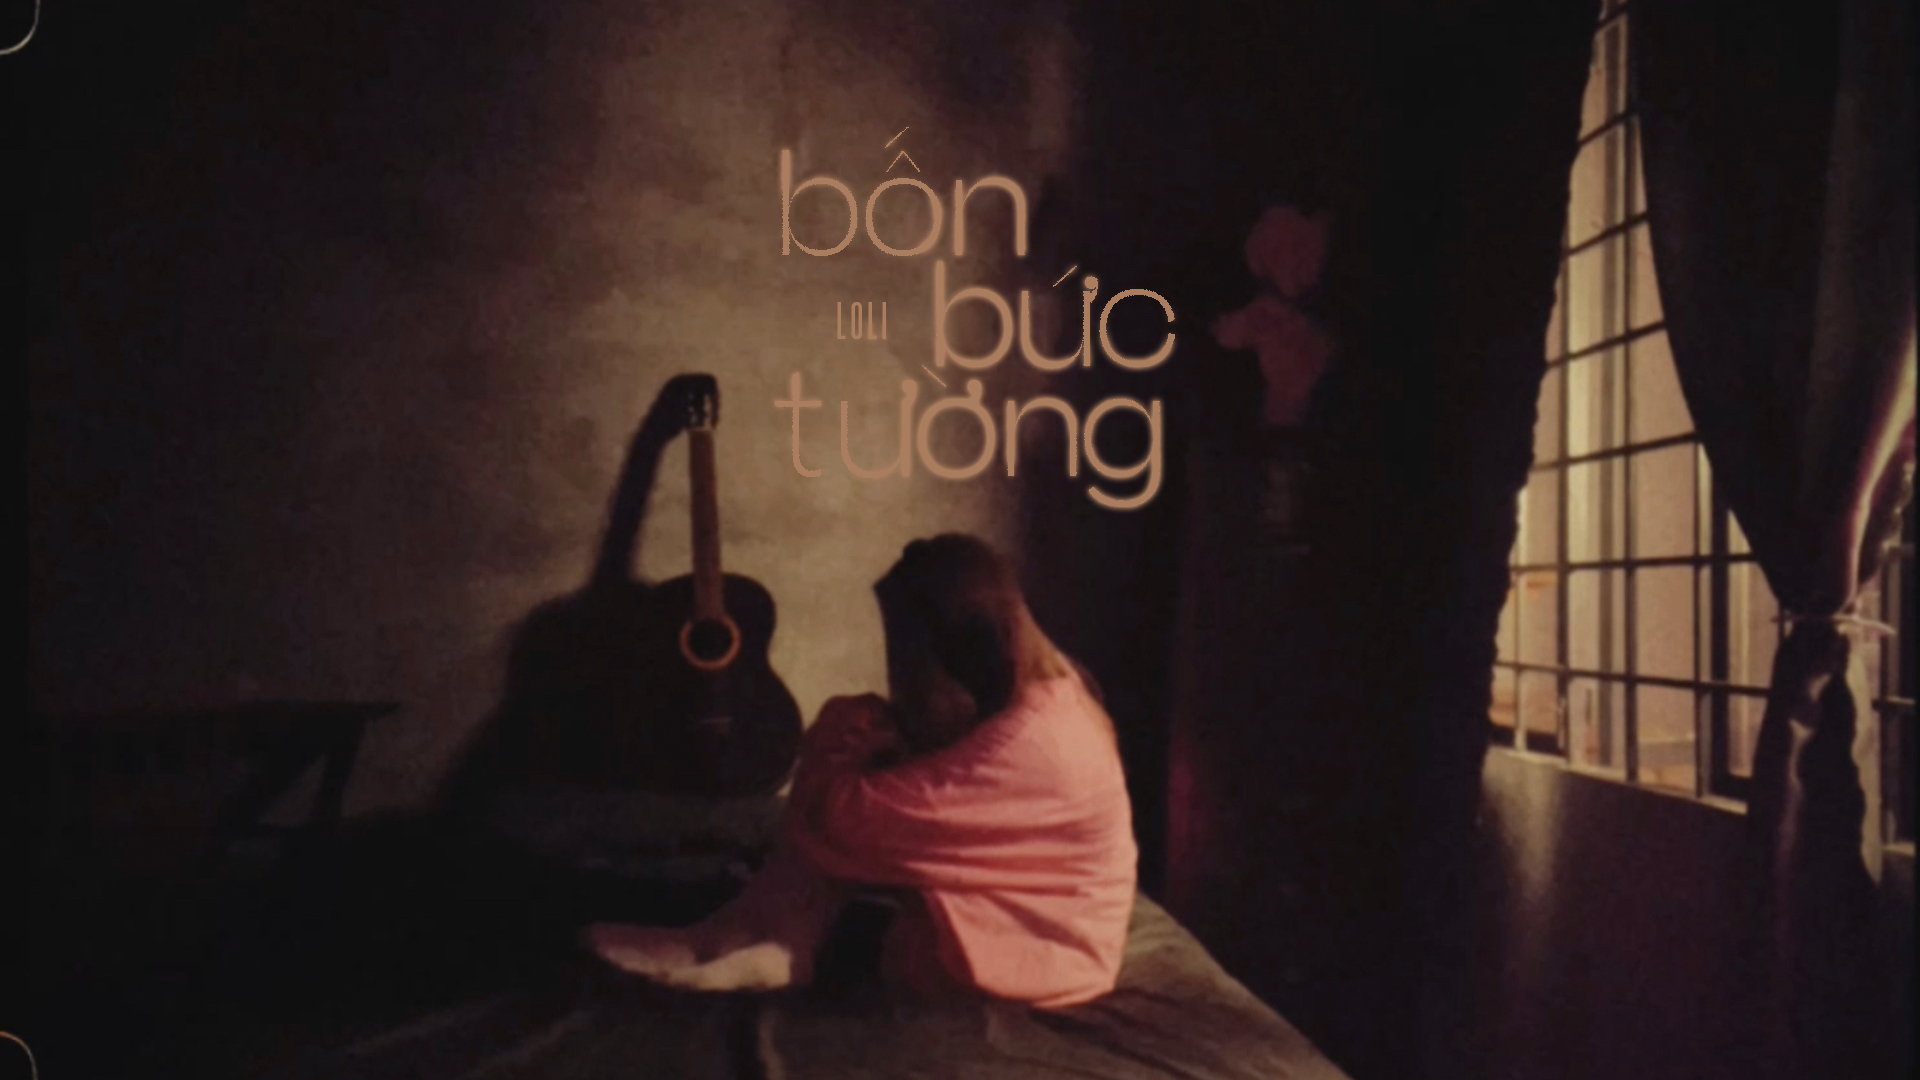 Loli bắt tay cùng hit-maker Hứa Kim Tuyền trong MV mới ‘Bốn bức tường’ - ảnh 1